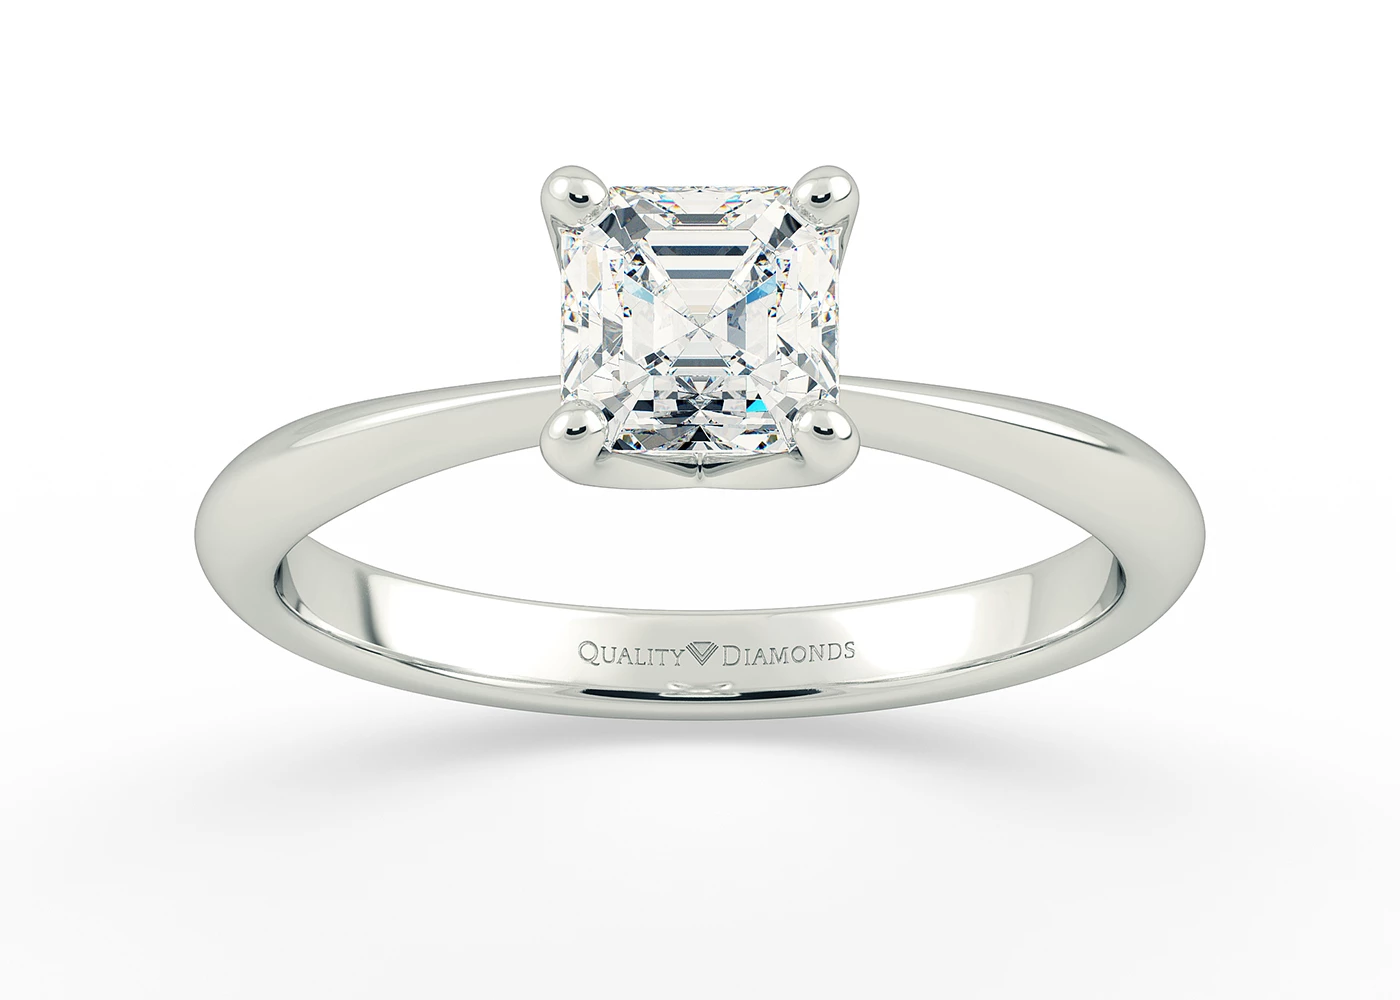 Asscher Amorette Diamond Ring in 18K White Gold